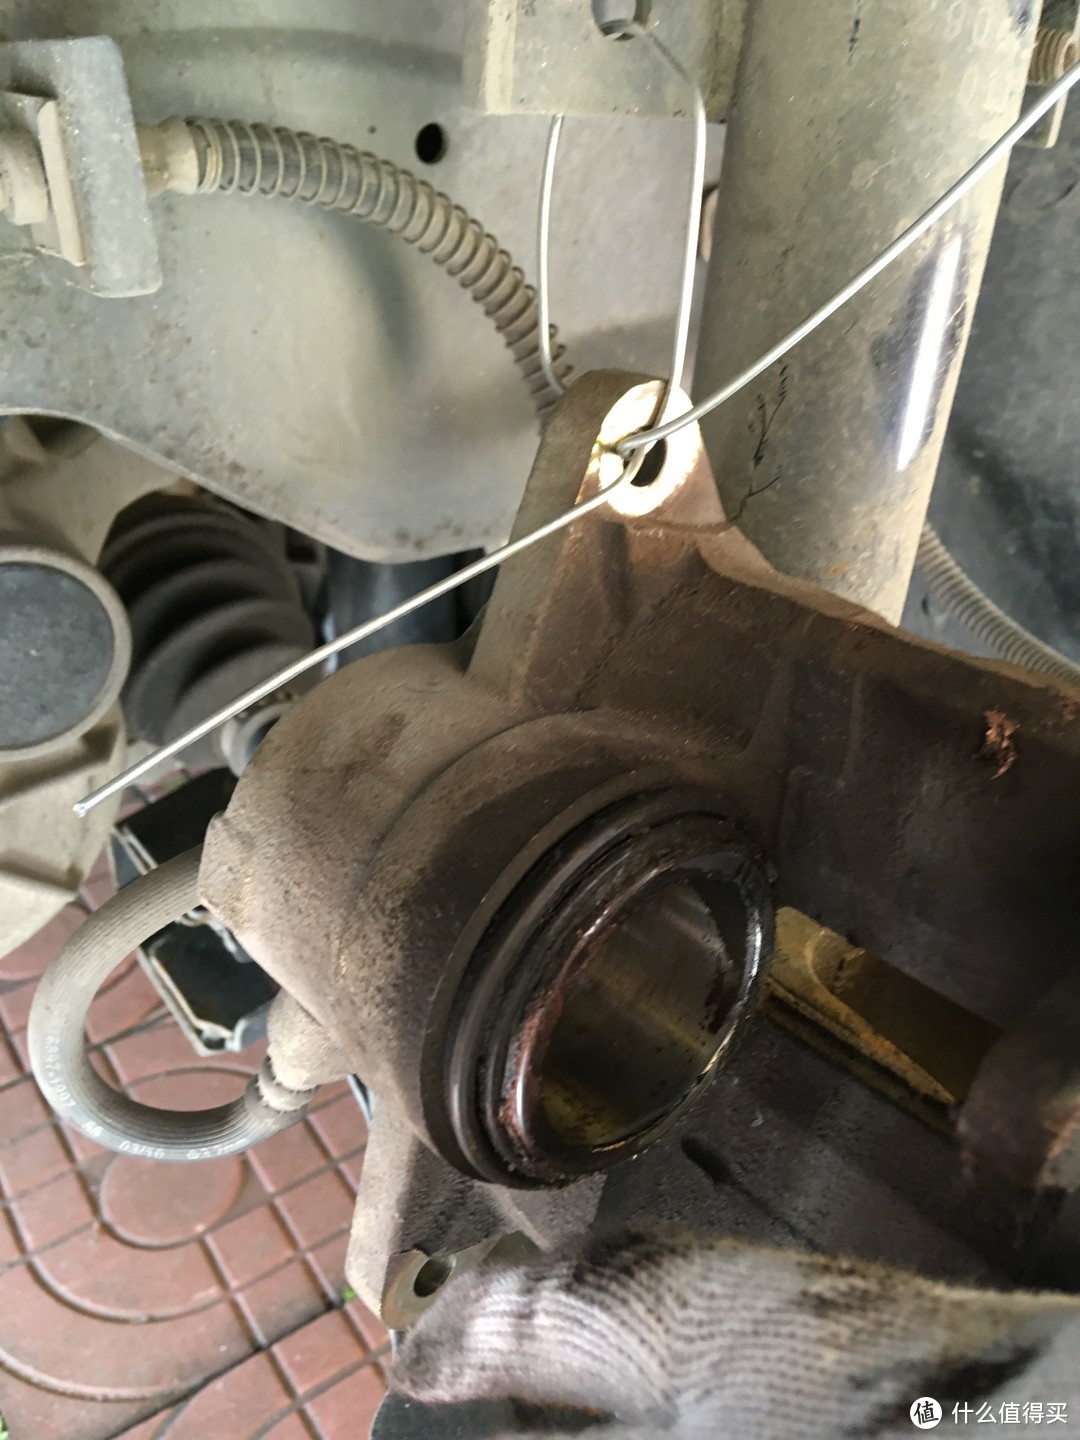 补充一句，由于刹车油管不能受力，建议用铁丝把分泵吊起来